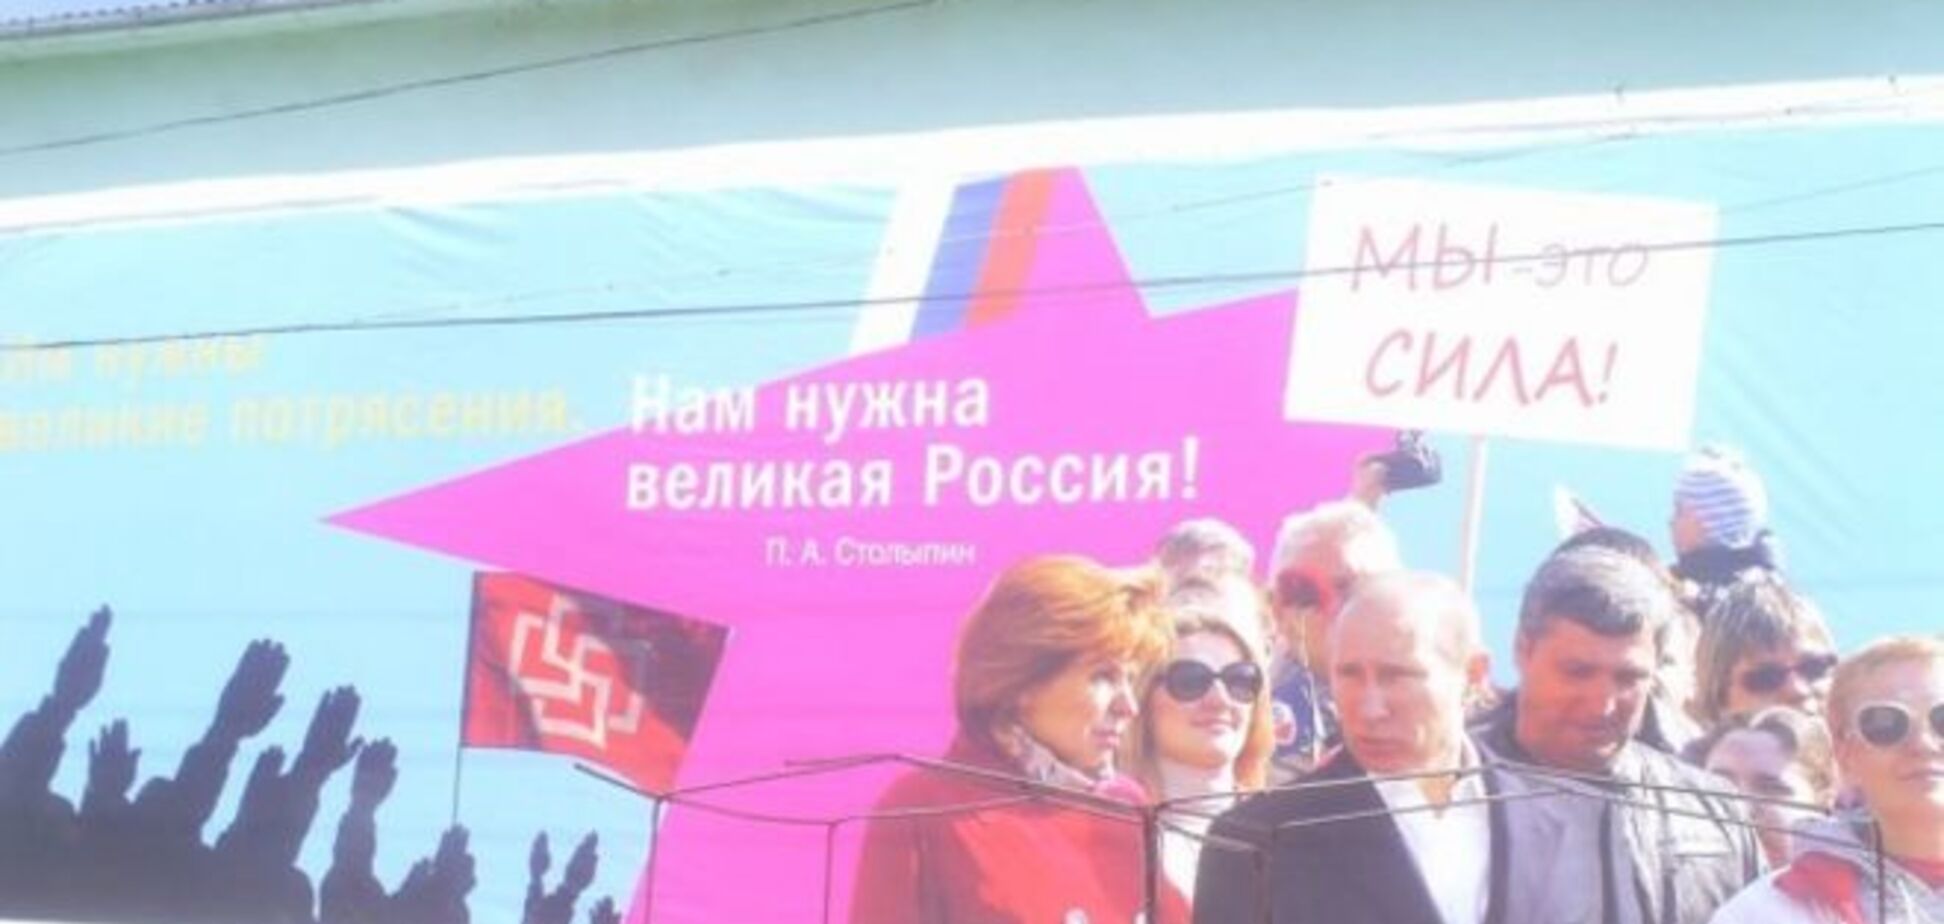 Зрада? У Криму біля прокуратури повісили величезний банер із нацистським Путіним: фотофакт